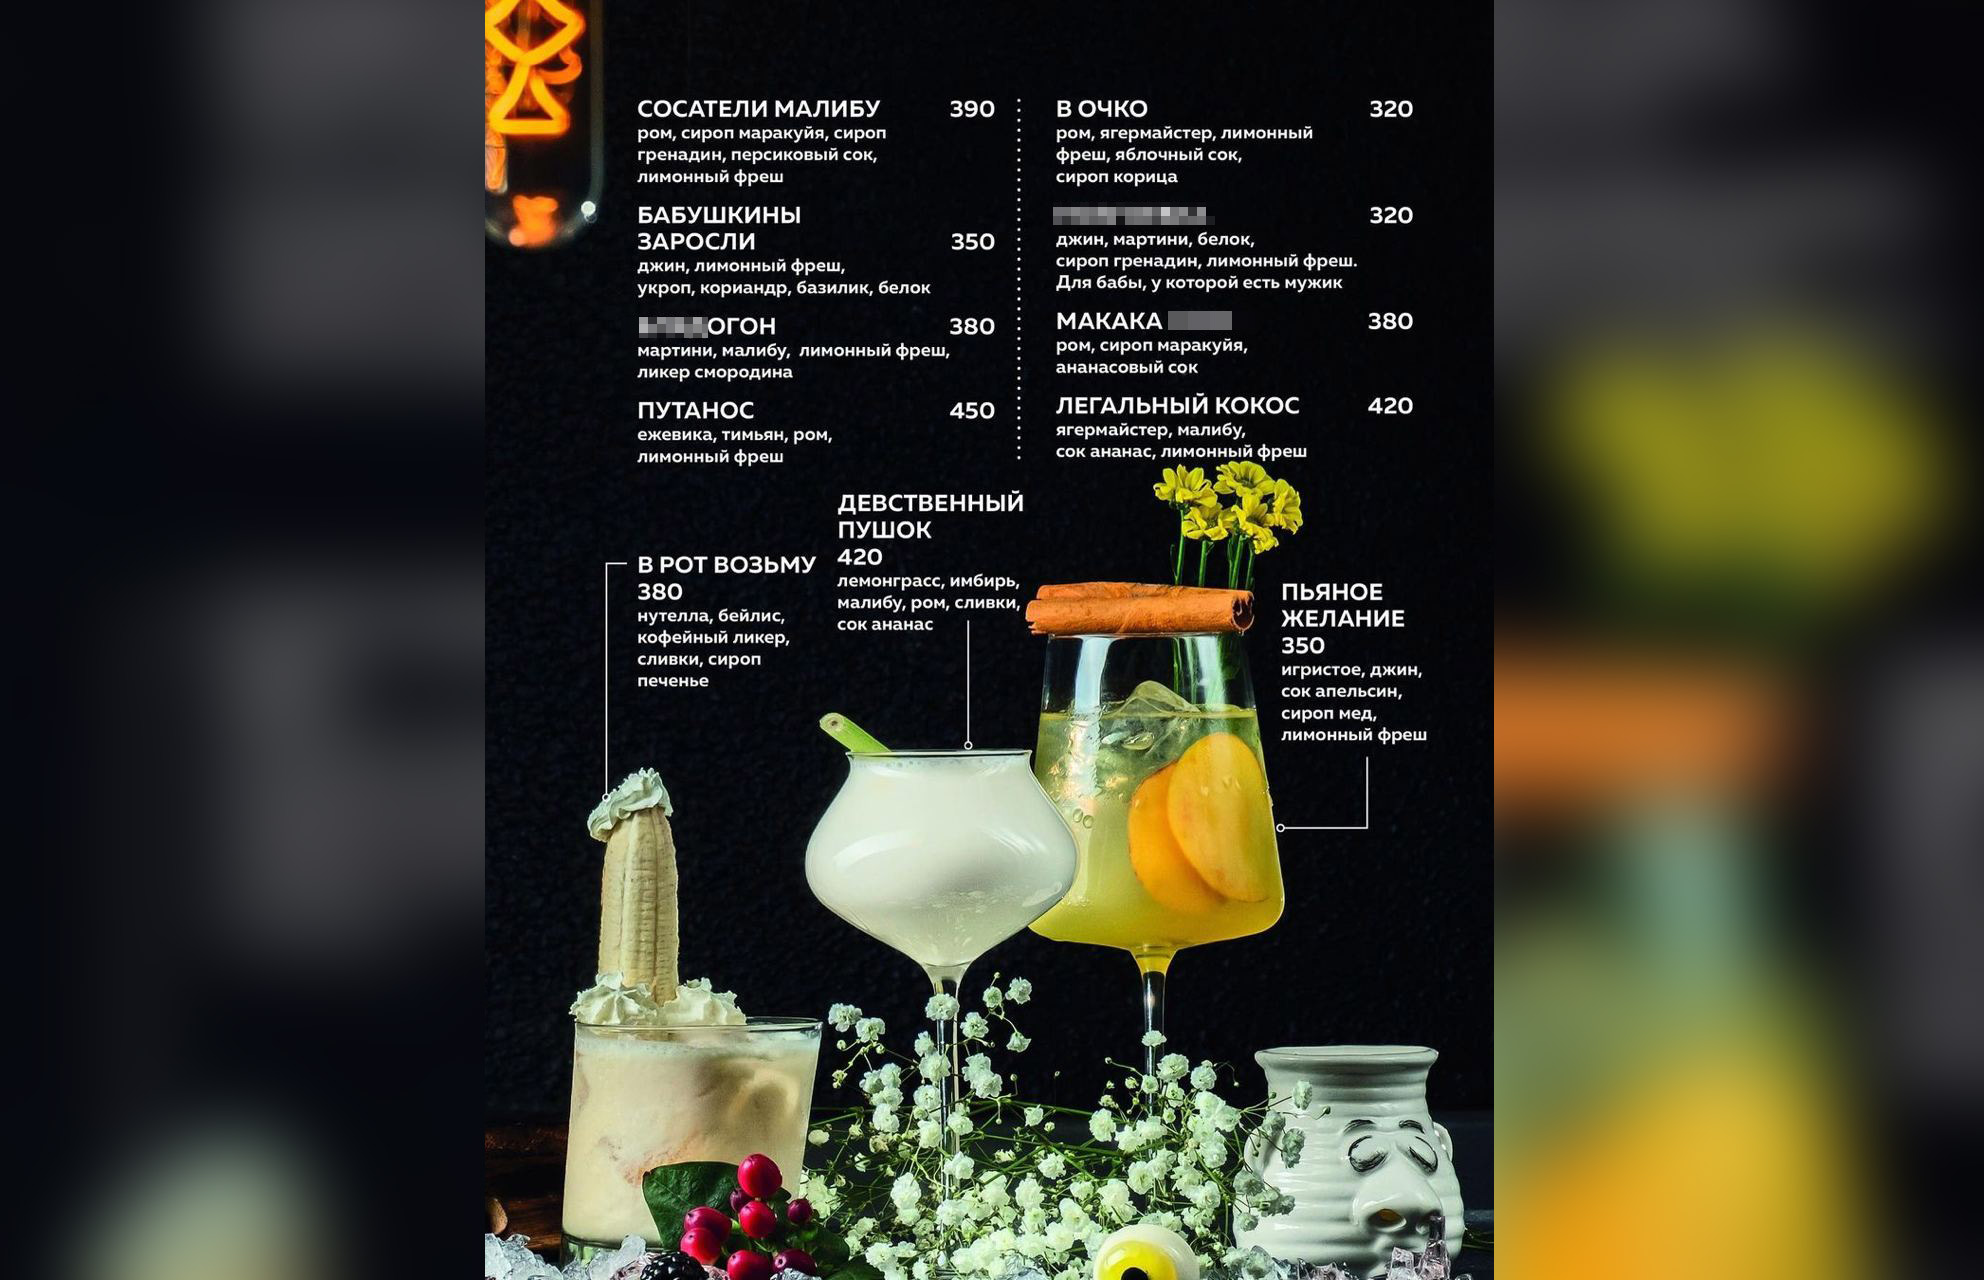 В барном меню есть коктейли "В рот возьму" и "Девственный пушок". Фото © Instagram (запрещён на территории Российской Федерации) / yebar.ru